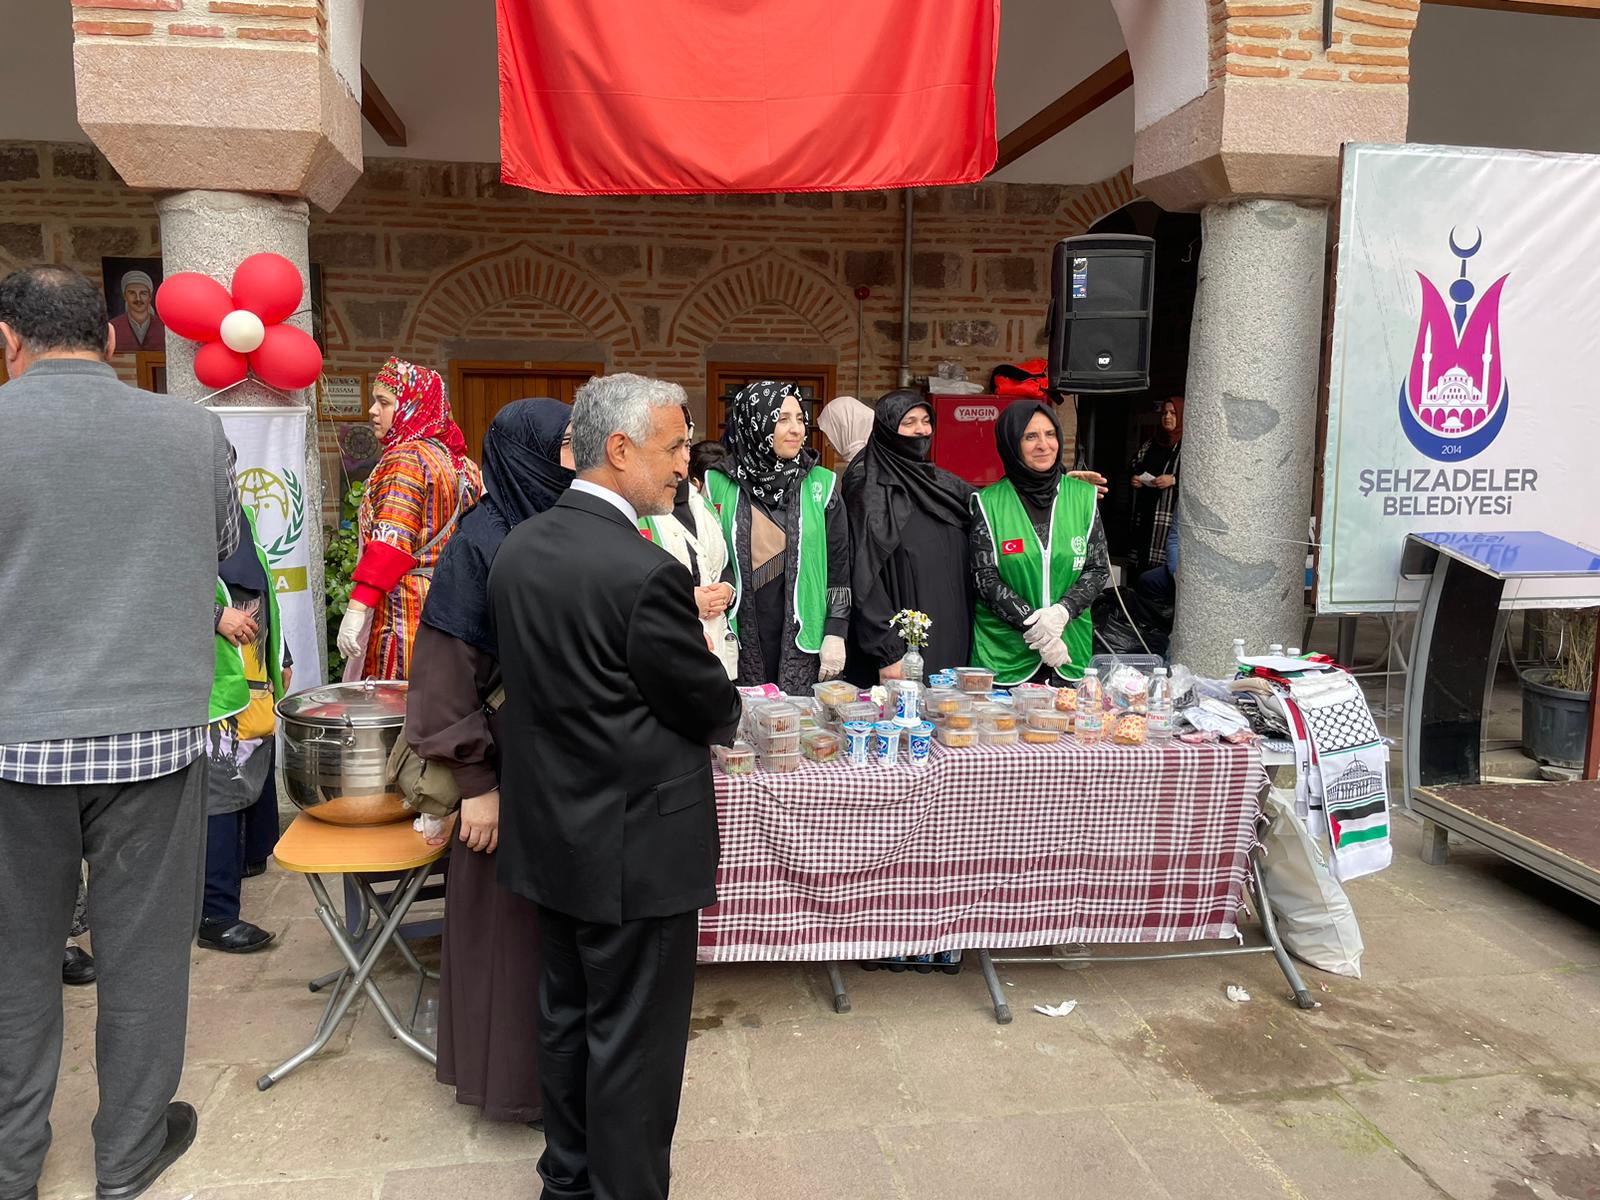 Manisa'da ikinci şifalı otlar festivali yapıldı